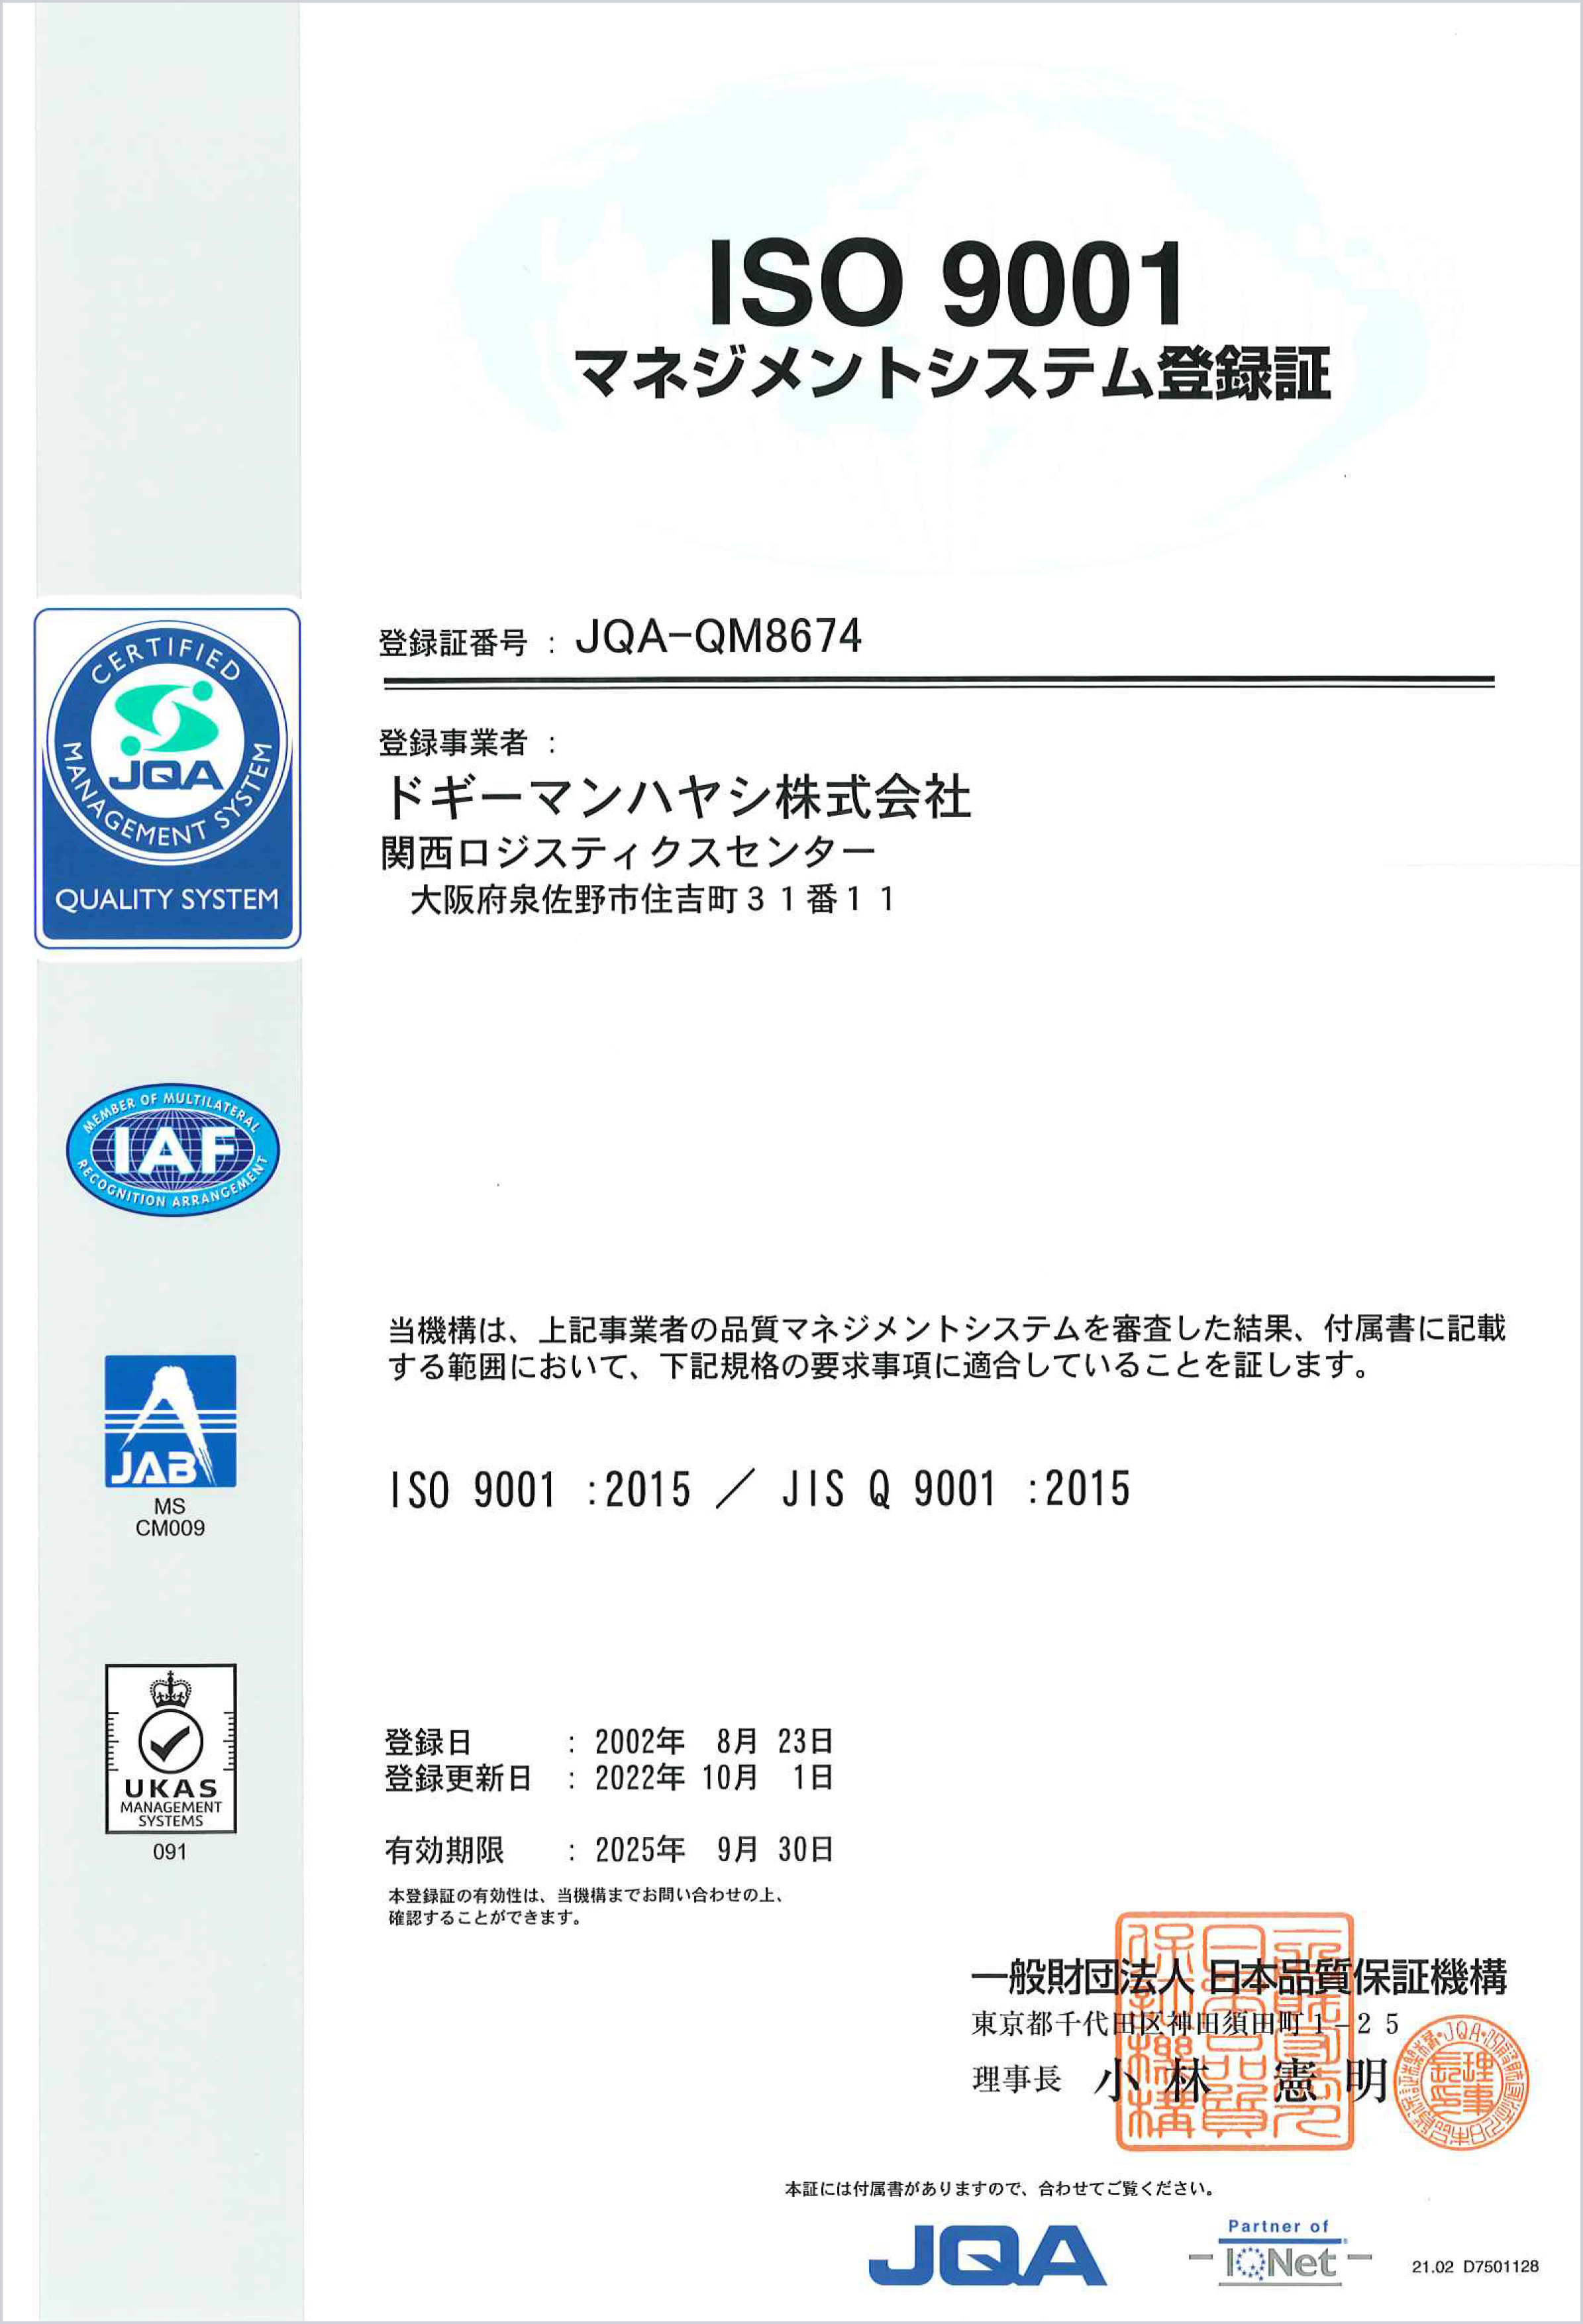 ISO9001マネジメントシステム登録証